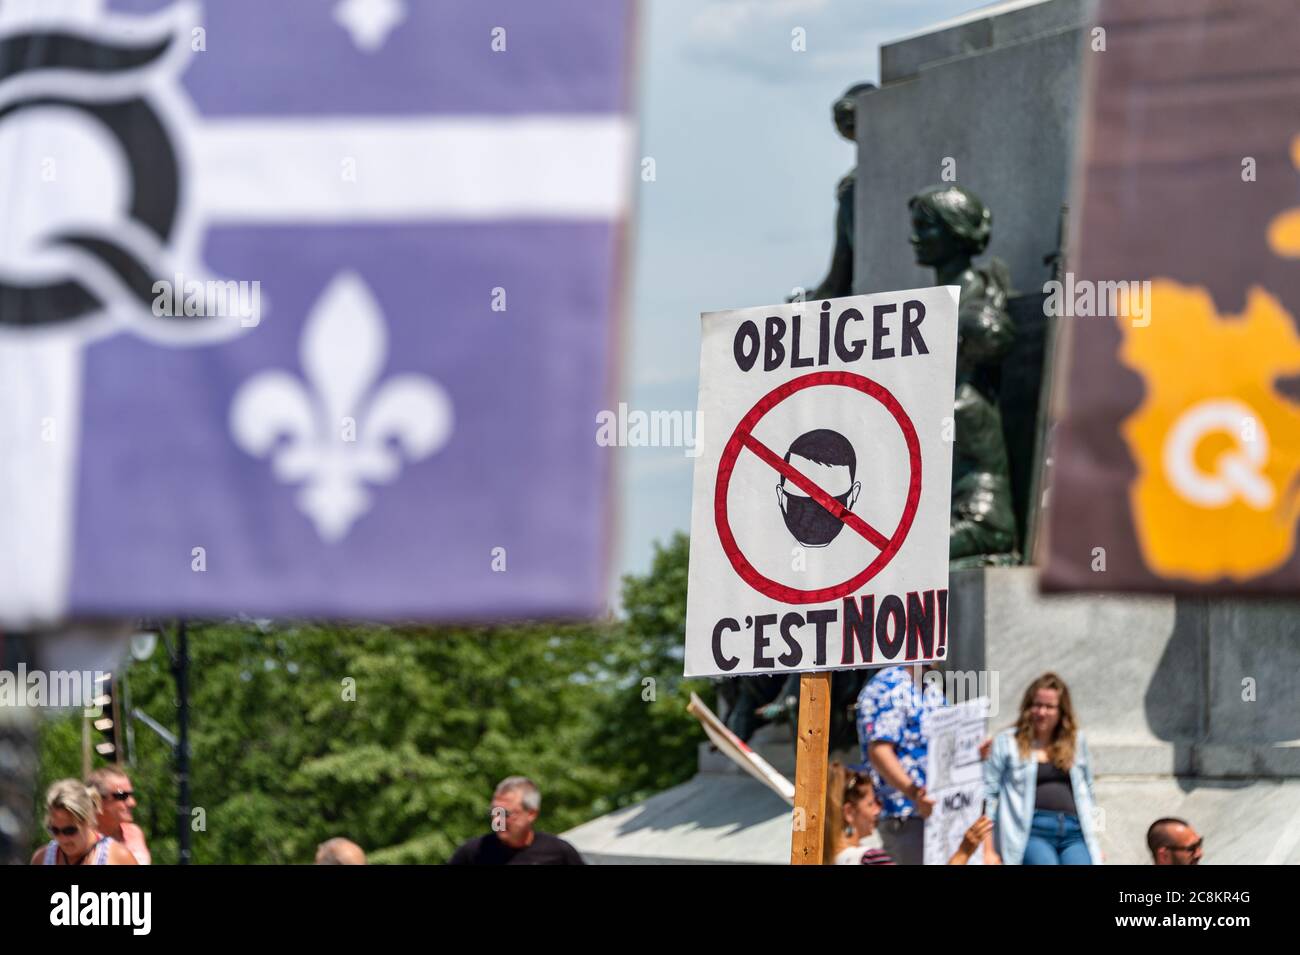 Montreal, Canadá - 25 de julio de 2020: Protesta contra las máscaras obligatorias en Quebec Foto de stock